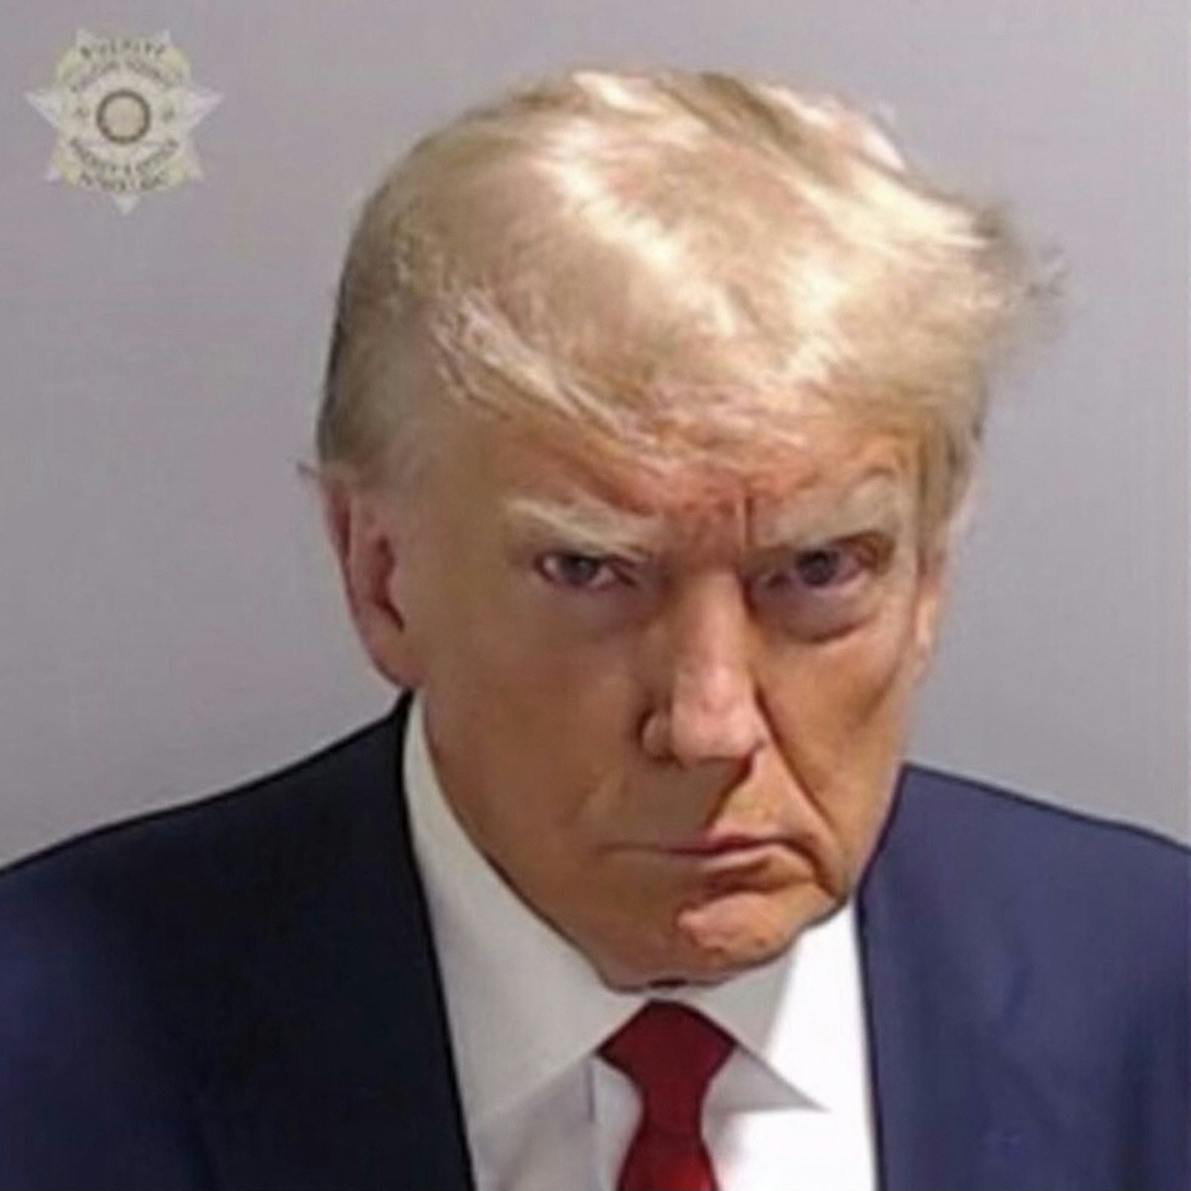 'Trumps politiefoto als het symbool van zijn verkiezingscampagne'